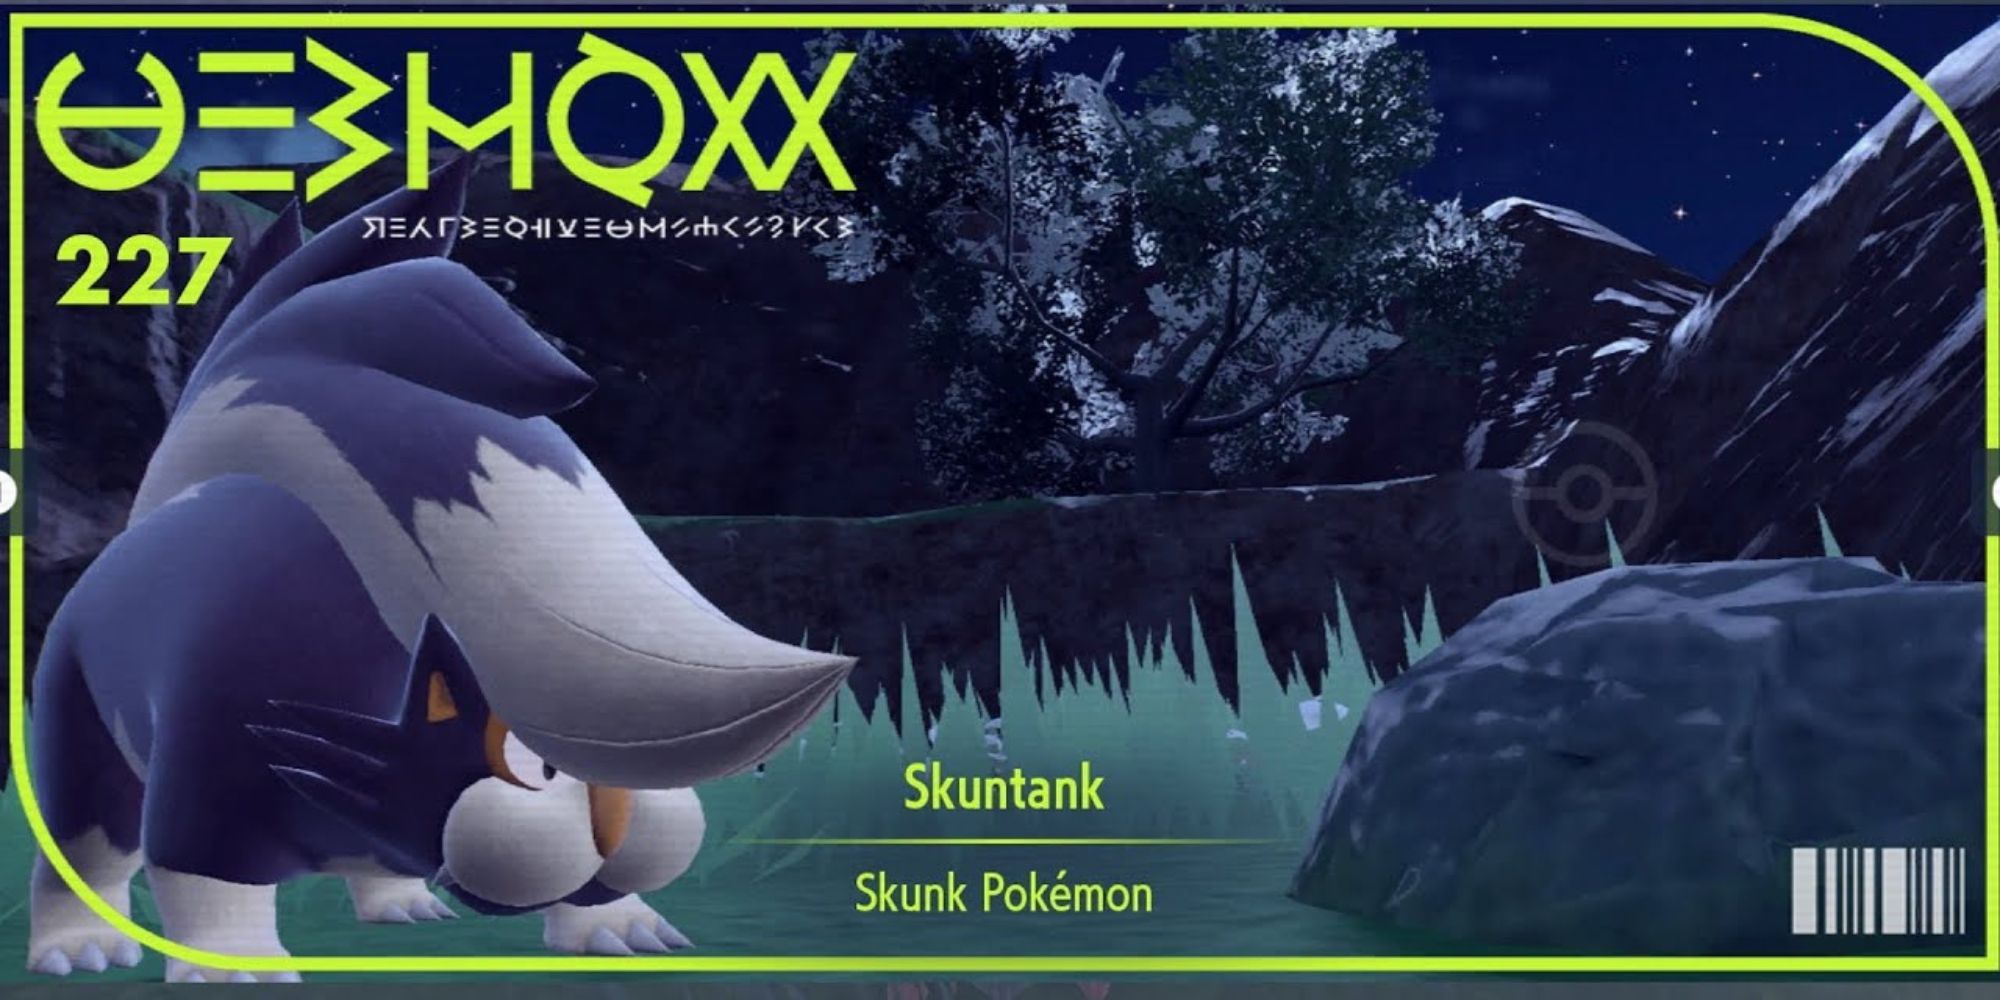 The pokedex cover image for Skuntank in Pokemon Scarlet & Violet